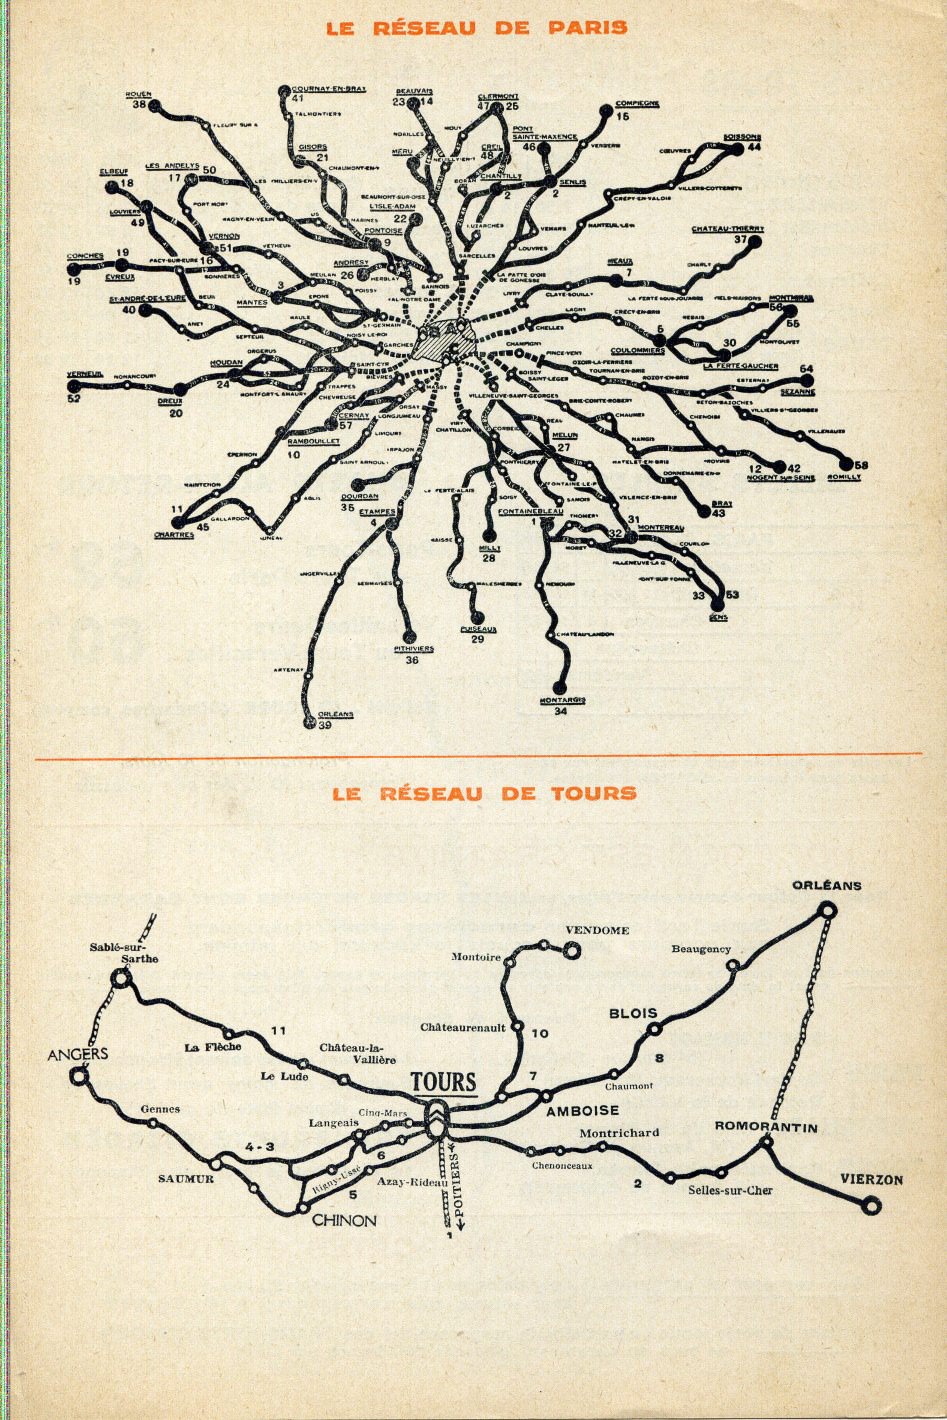 1933 Transports Citroen maps Tours and Paris